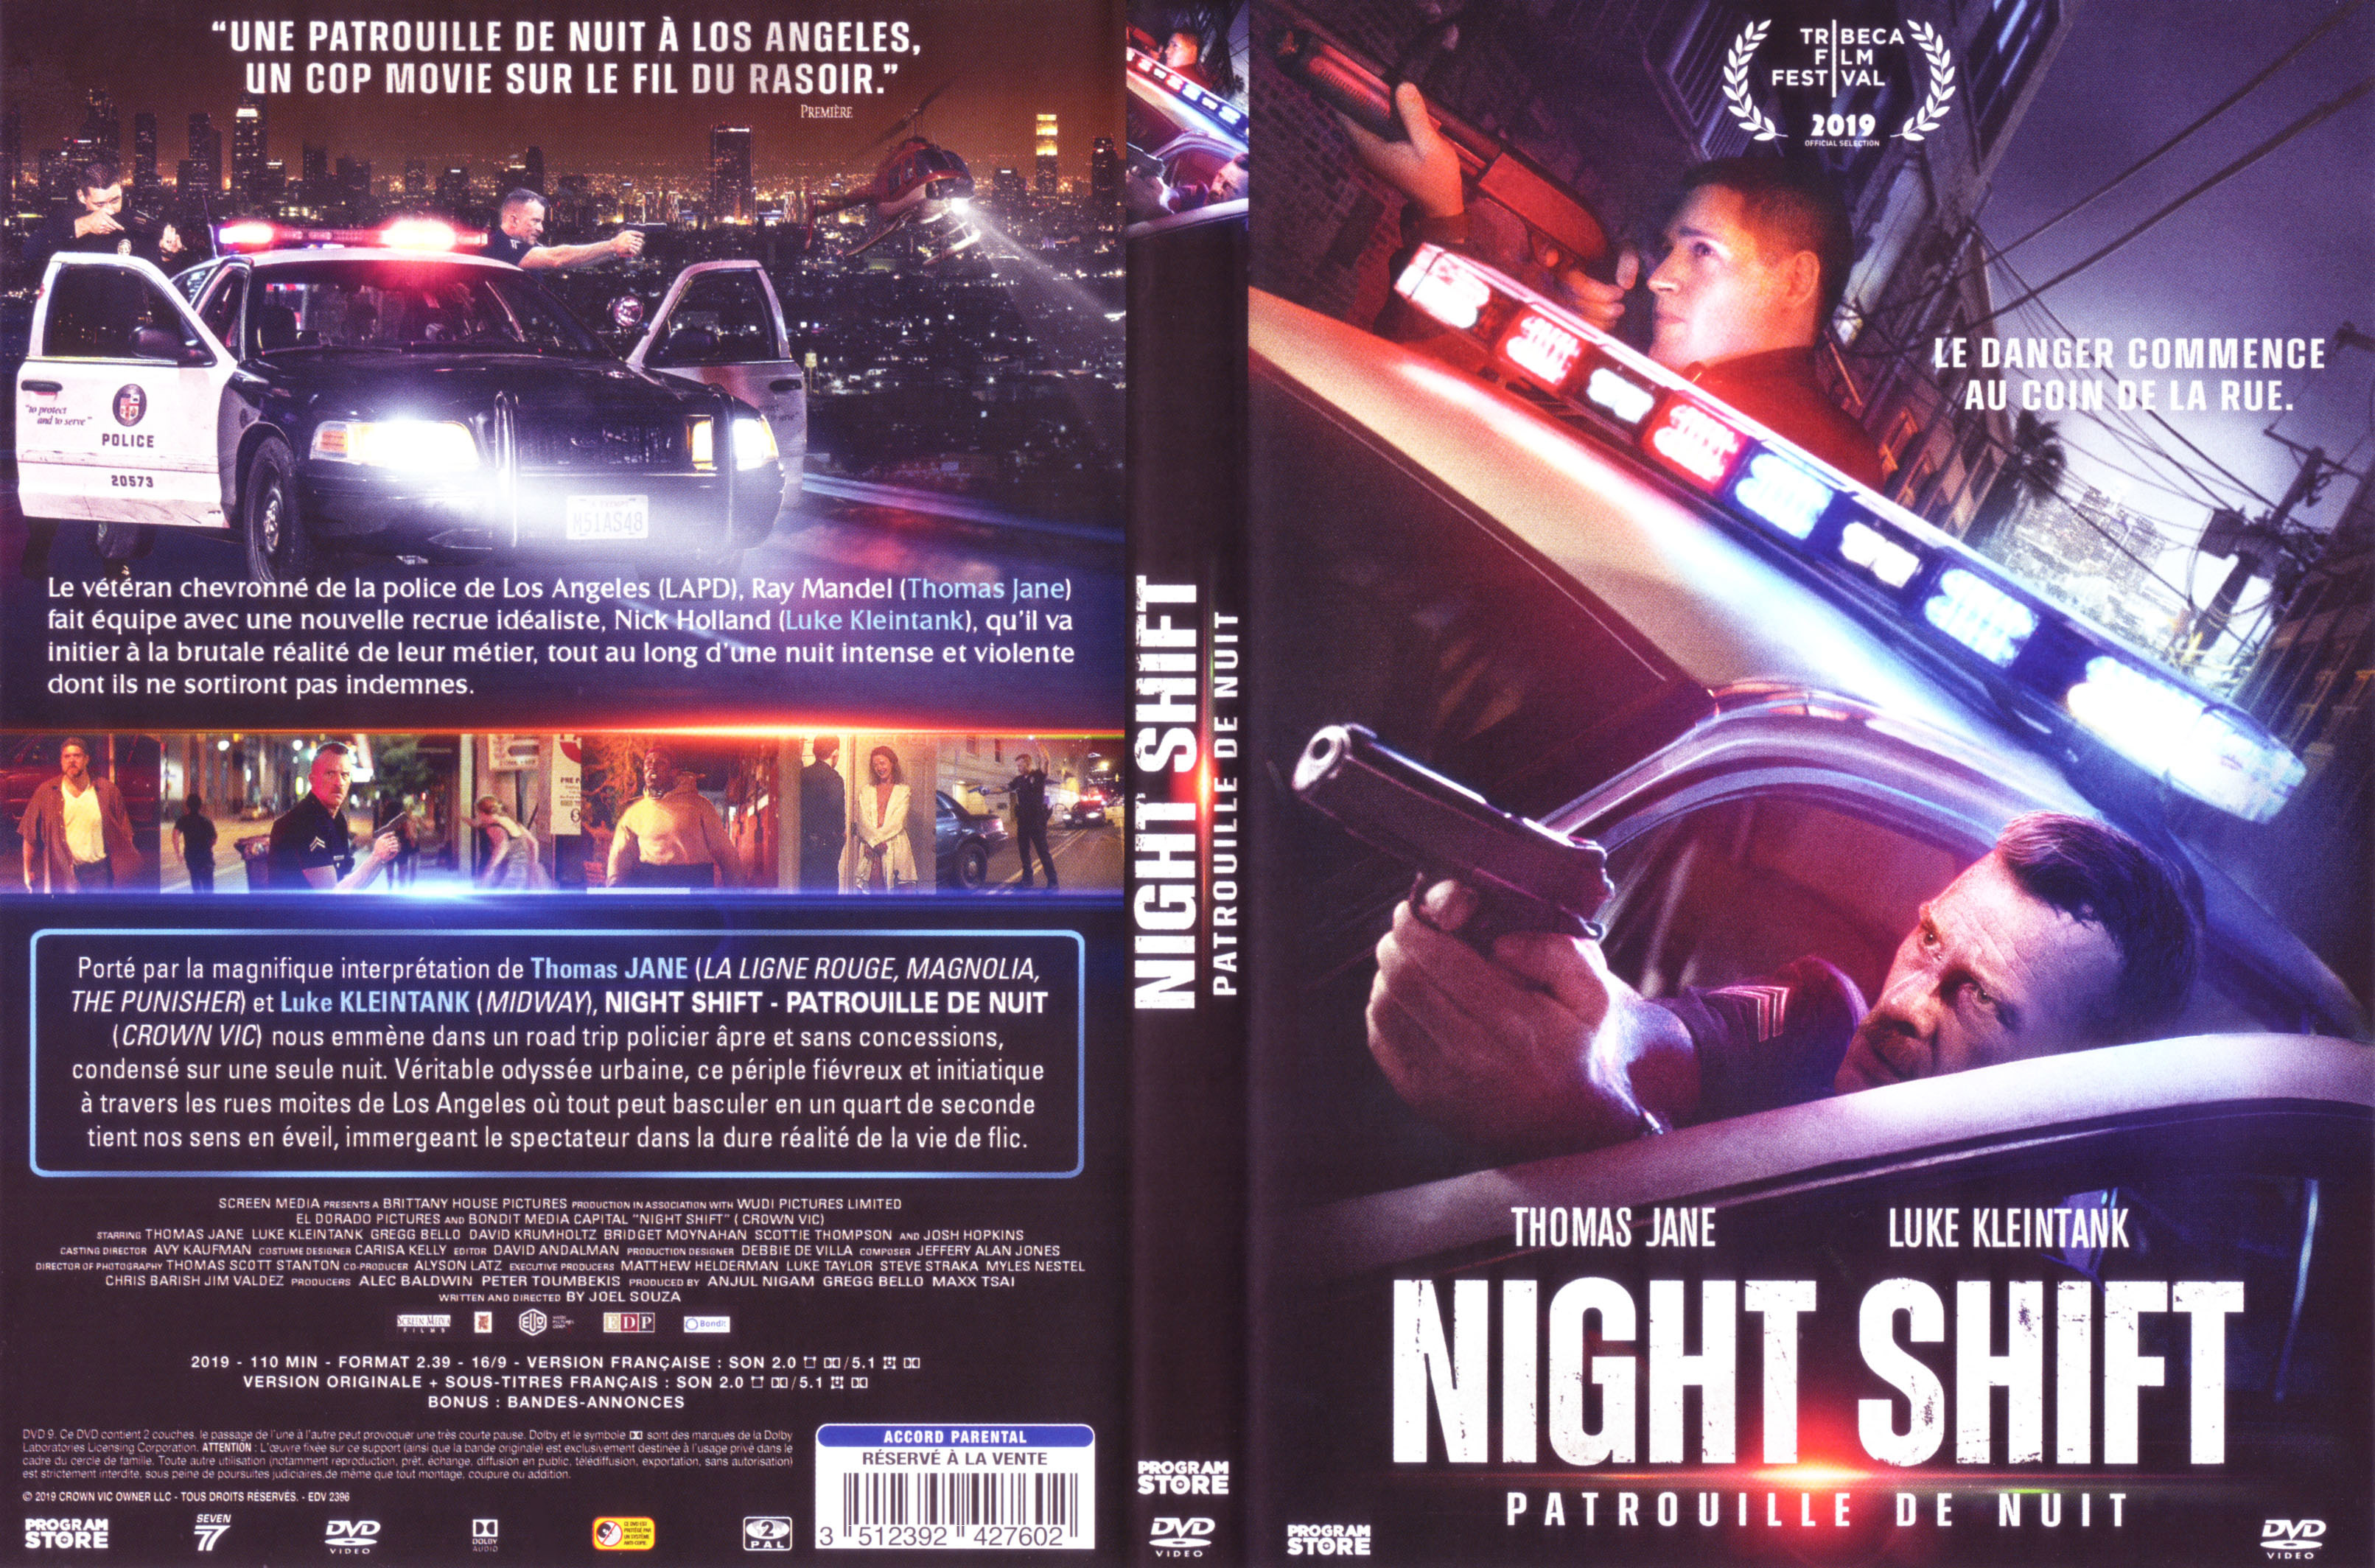 Jaquette DVD Night shift patrouille de nuit